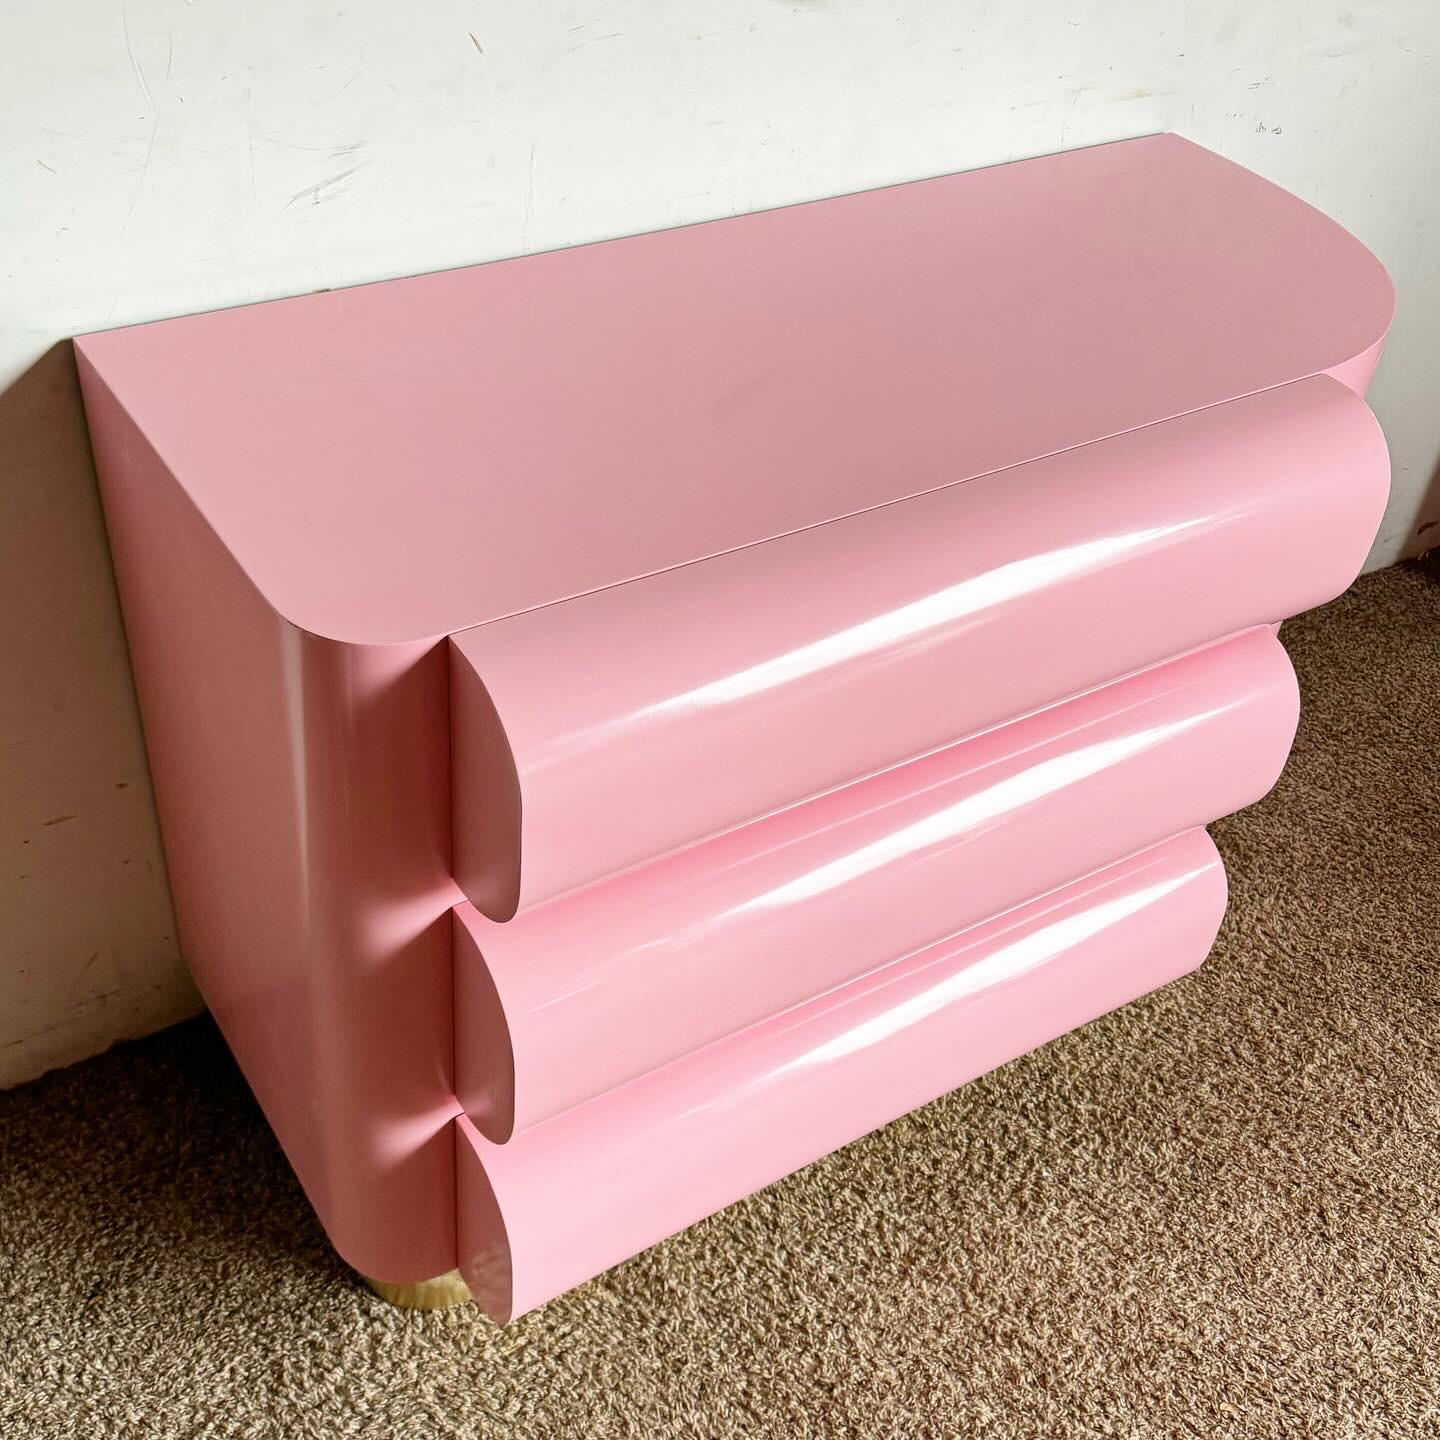 Verwandeln Sie Ihren Raum mit der Postmodern Pink Lacquered Curved Bullnose Commode/Chest of Drawers. Das einzigartige geschwungene Design und die leuchtend rosafarbene Lackierung machen dieses Möbelstück zu einem modernen und verspielten Statement.